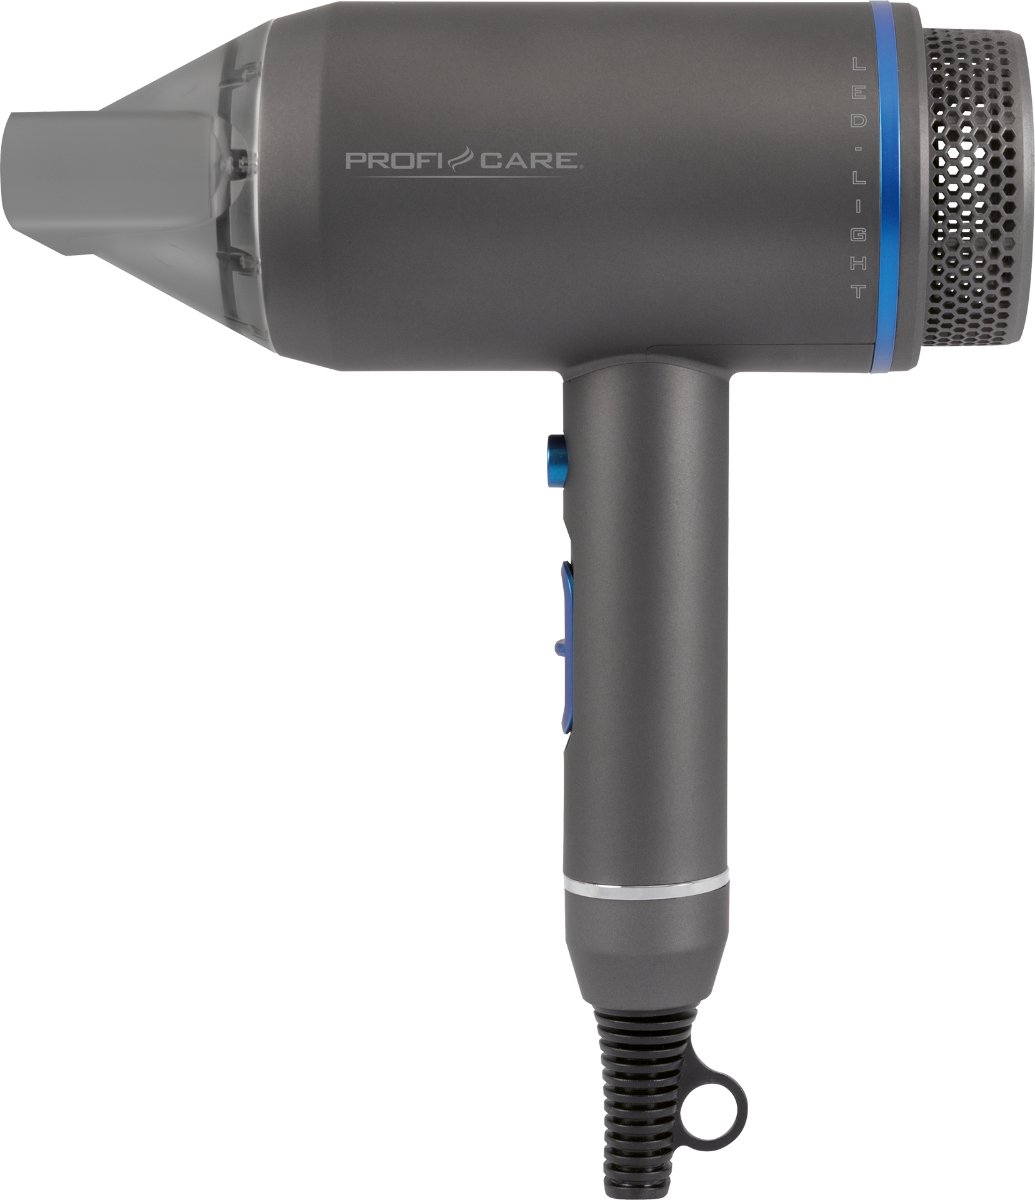 ProfiCare PC-HT 3082 Föhn, 3 temperatuur-/vermogensniveaus, Easy Click-vormmondstuk 360° draaibaar, magnetisch, blauw-antraciet